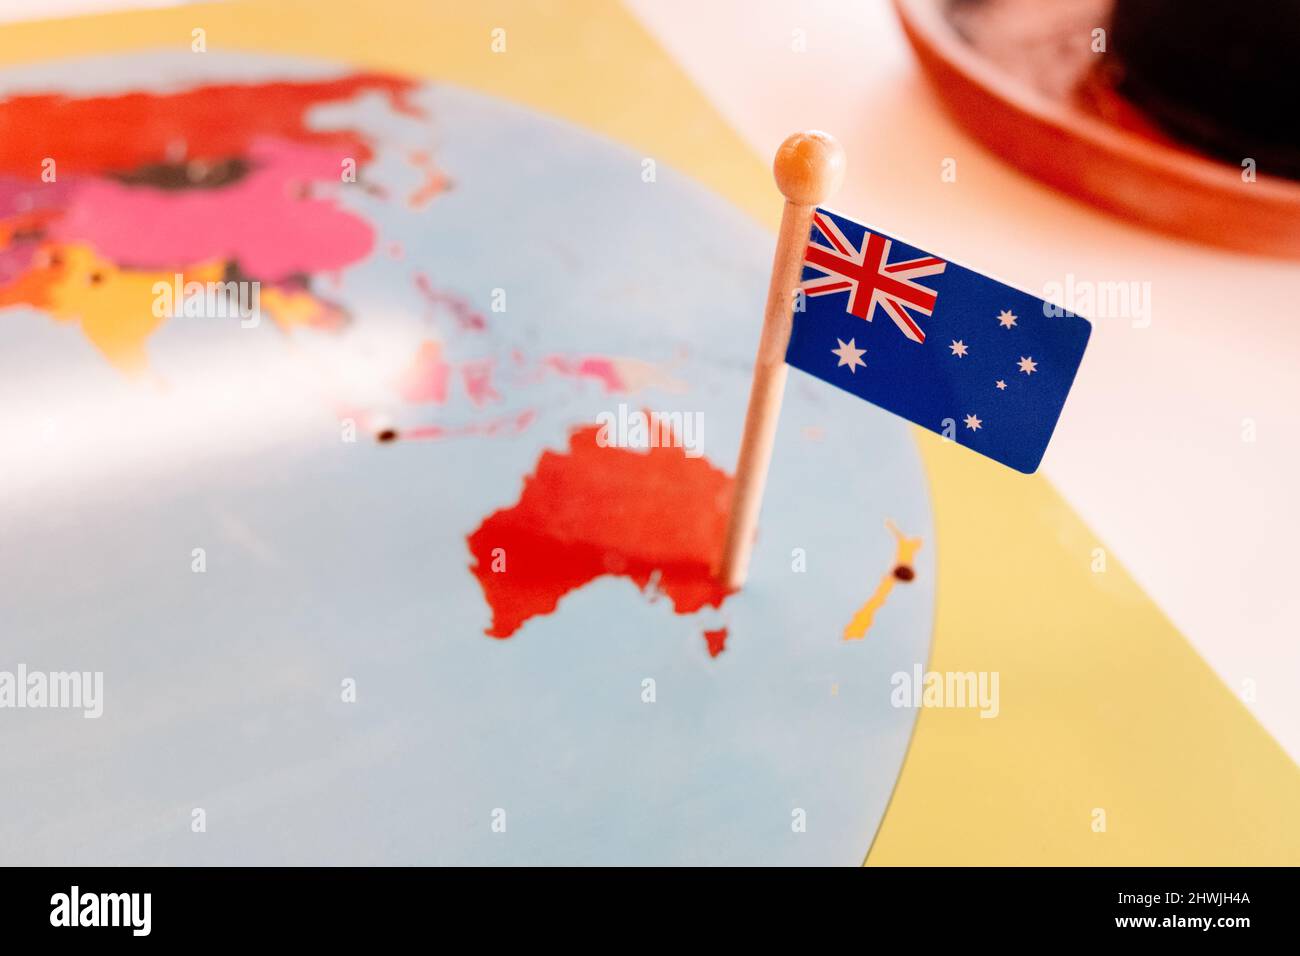 Eine australische Flagge, die auf einer Montessori-Karte des Kontinents Ozeanien in einer Schule vernagt ist. Stockfoto